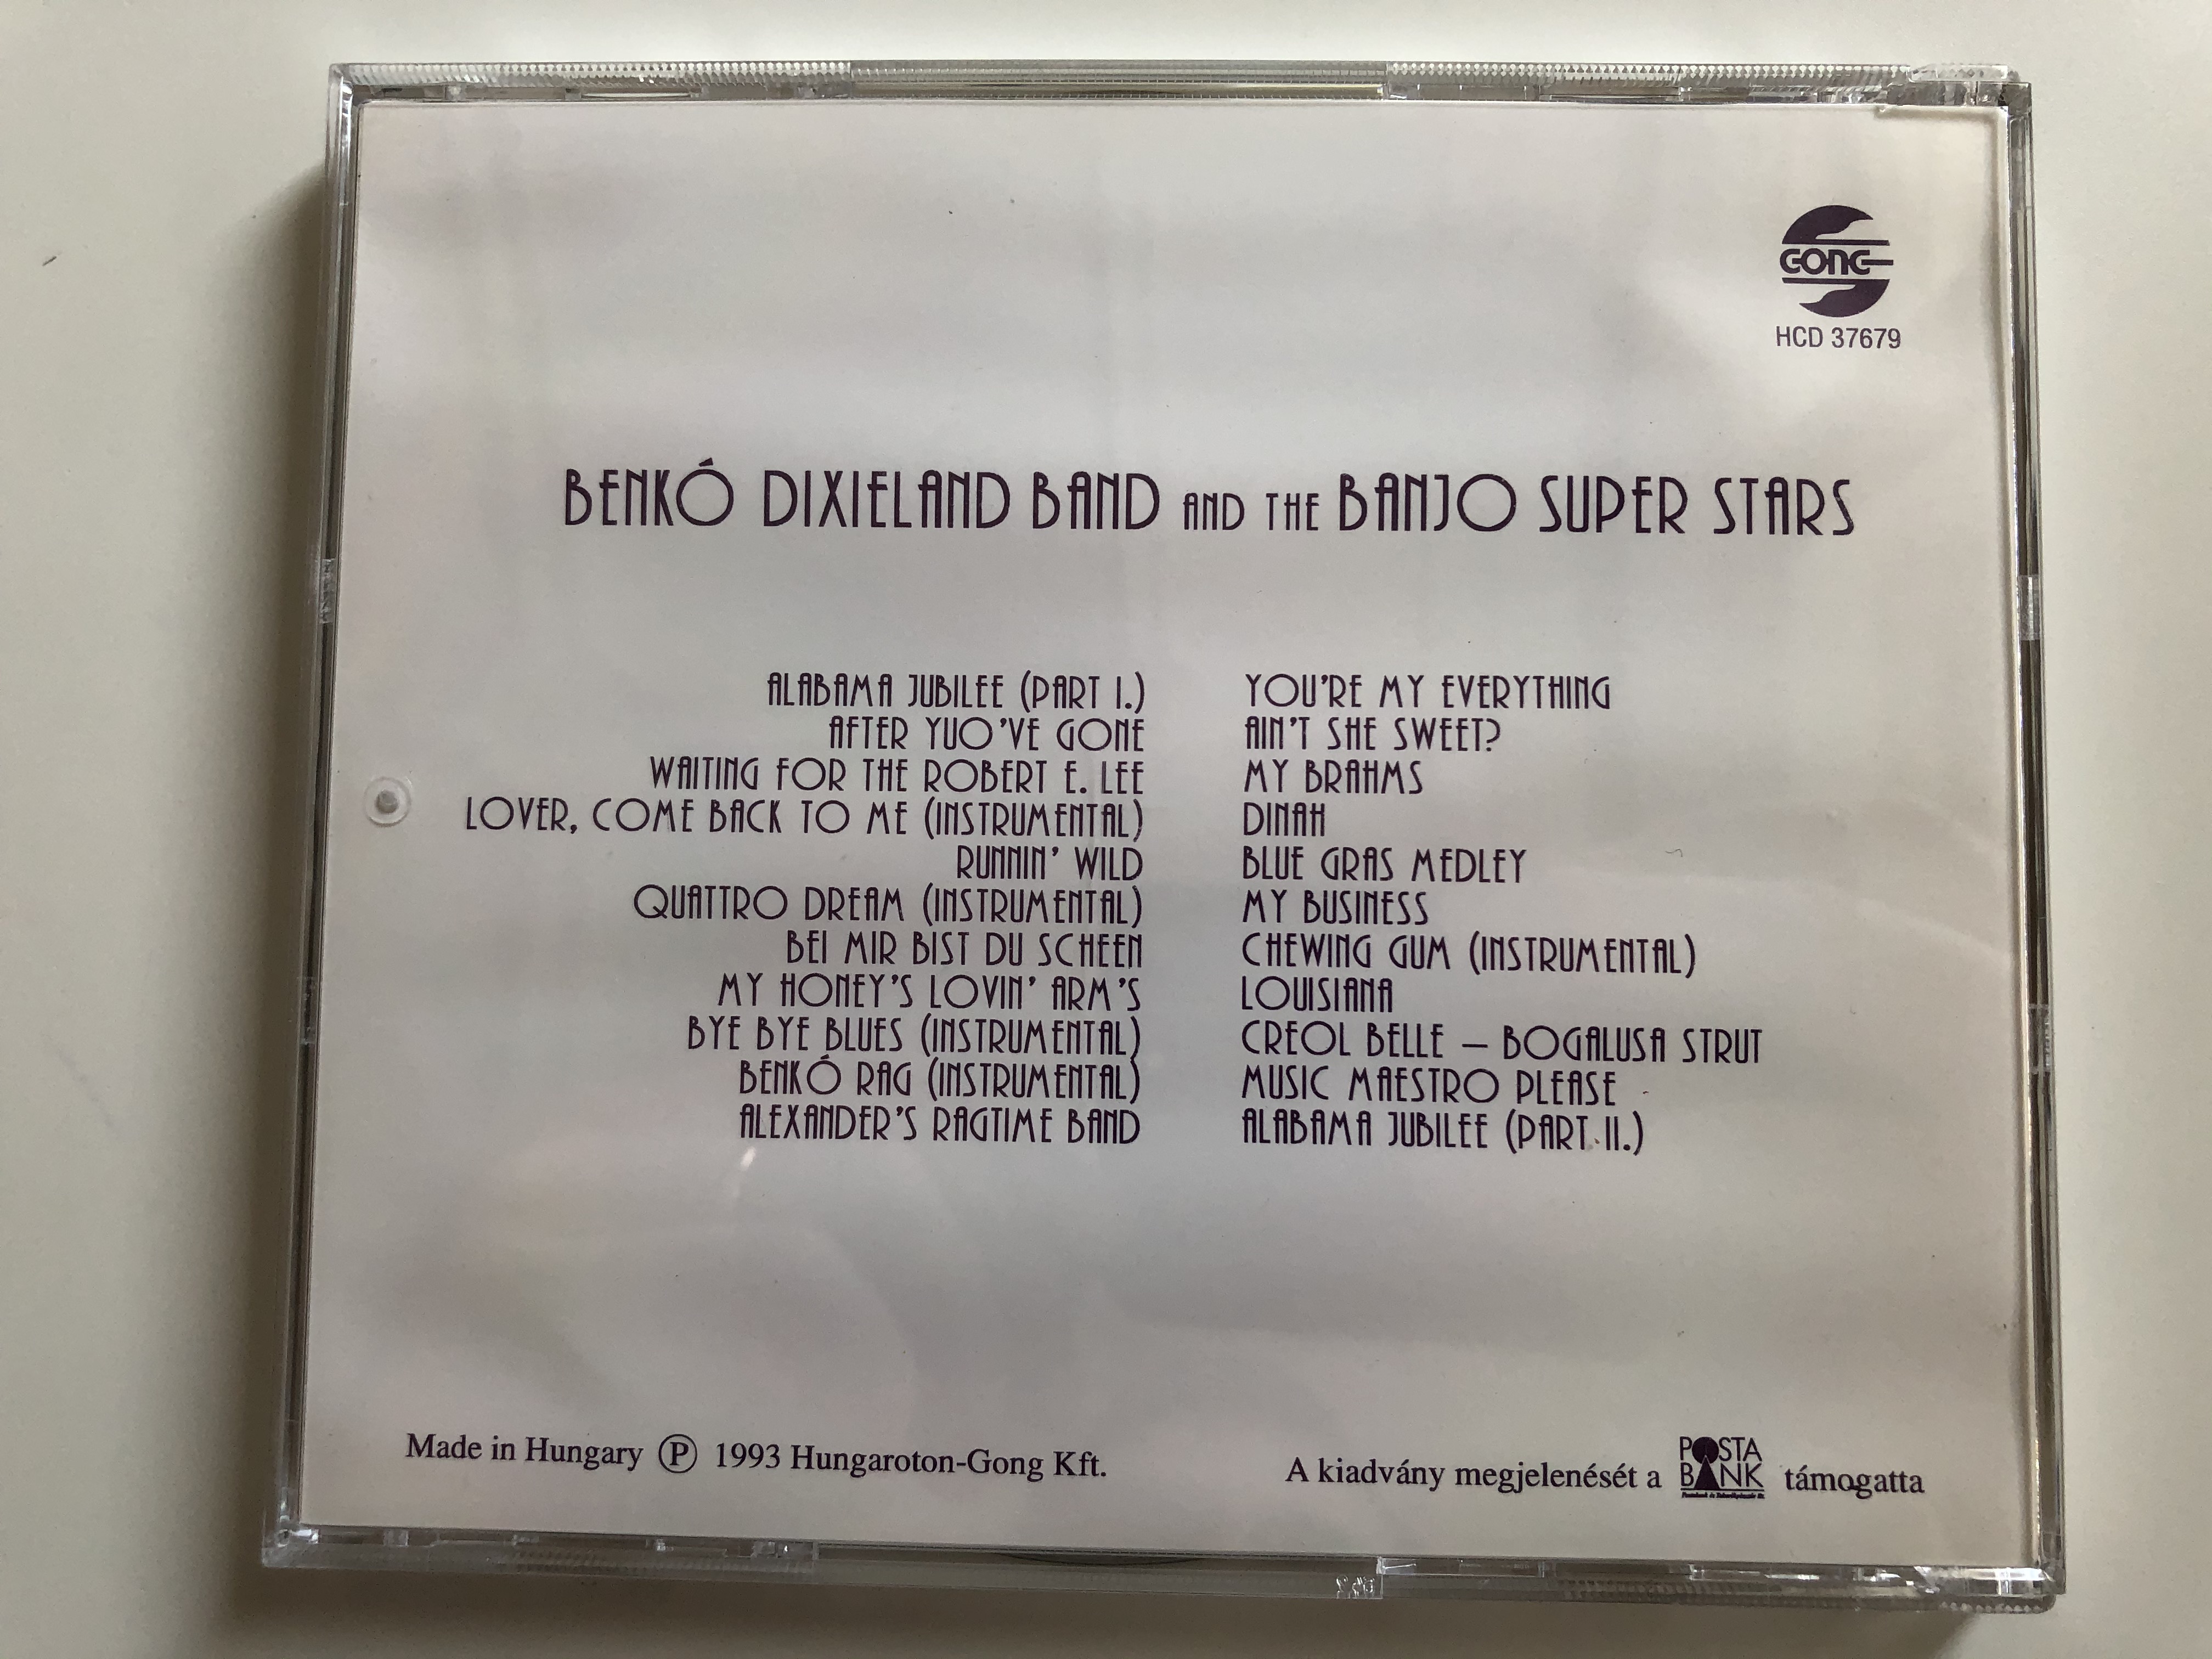 benk-dixieland-band-and-the-banjo-super-stars-gong-audio-cd-1993-hcd-37679-5-.jpg